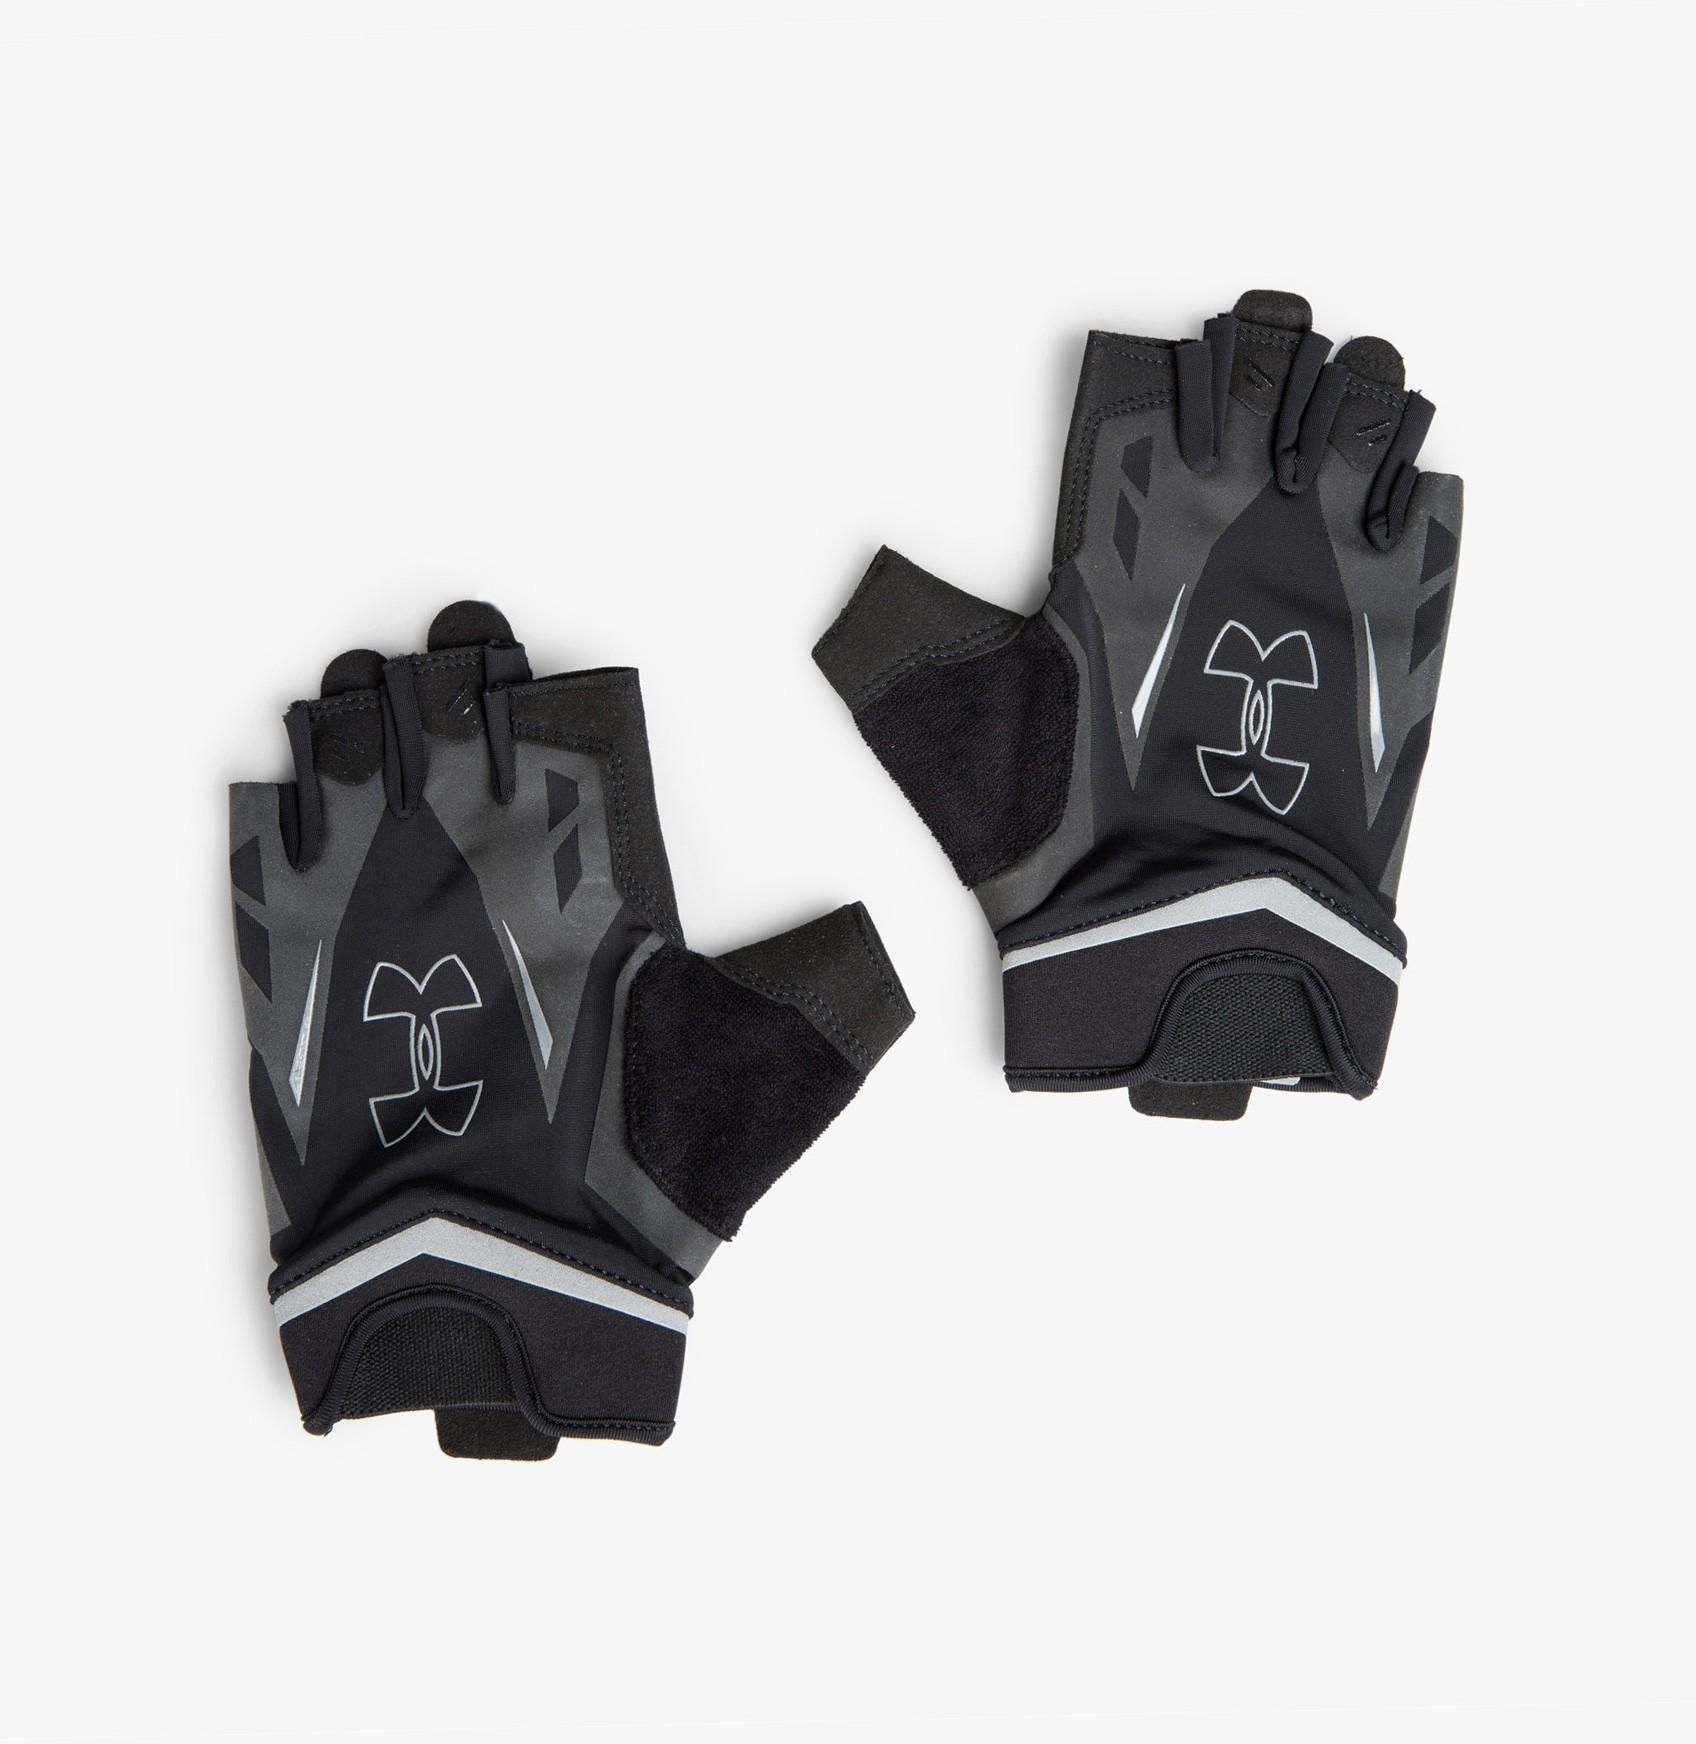 Flux Training Gloves